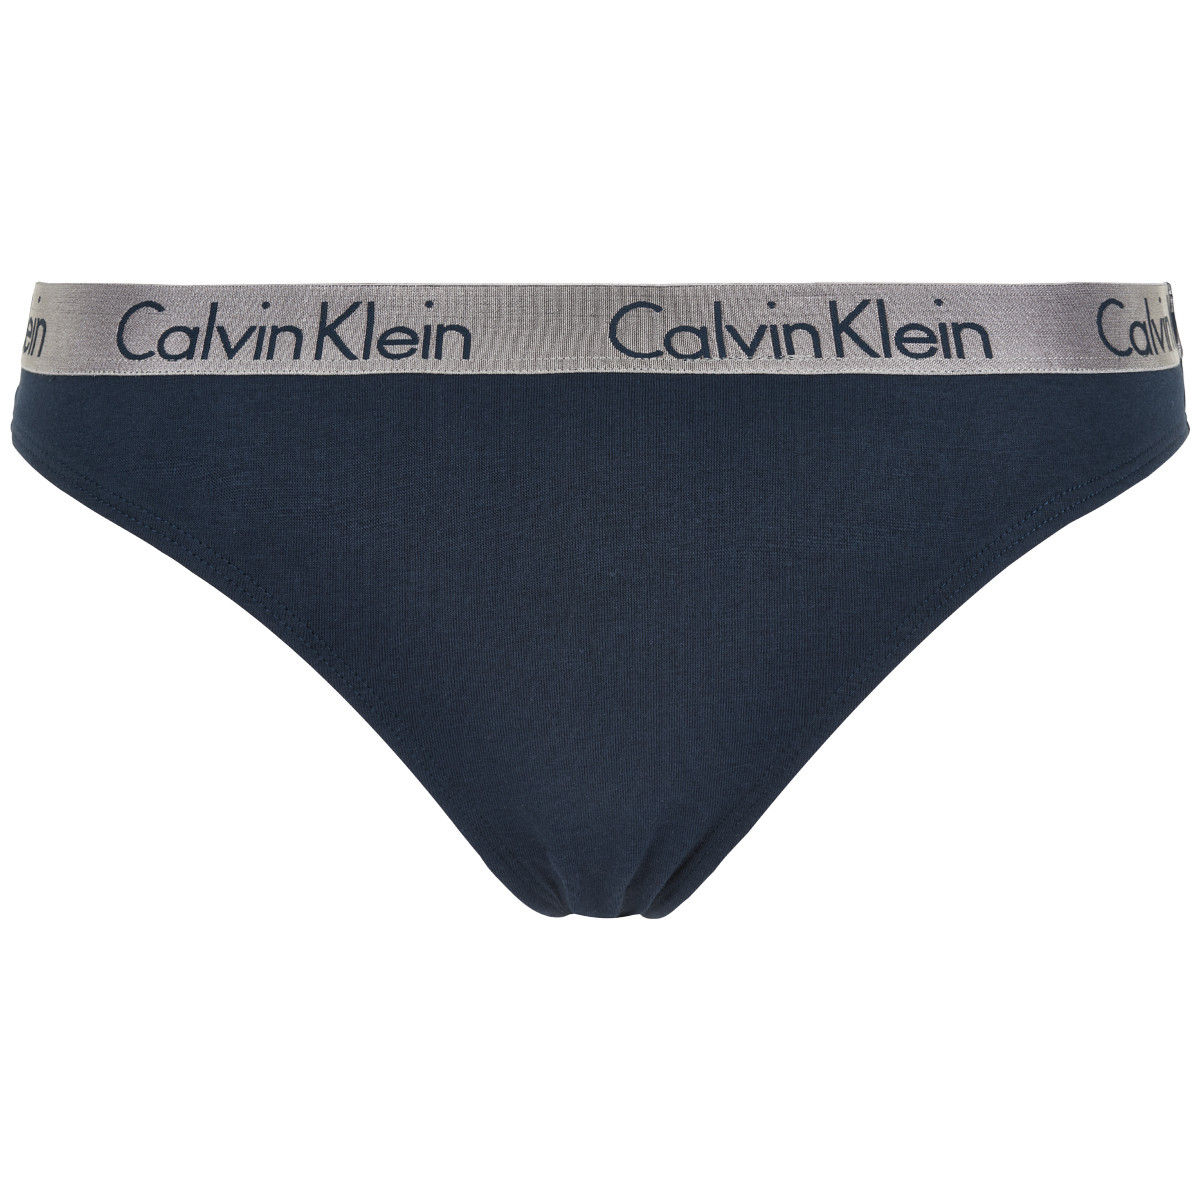 Calvin Klein String 3 Pack / CALVIN KLEIN 3 PACK STRING D3590E CZ3 ...